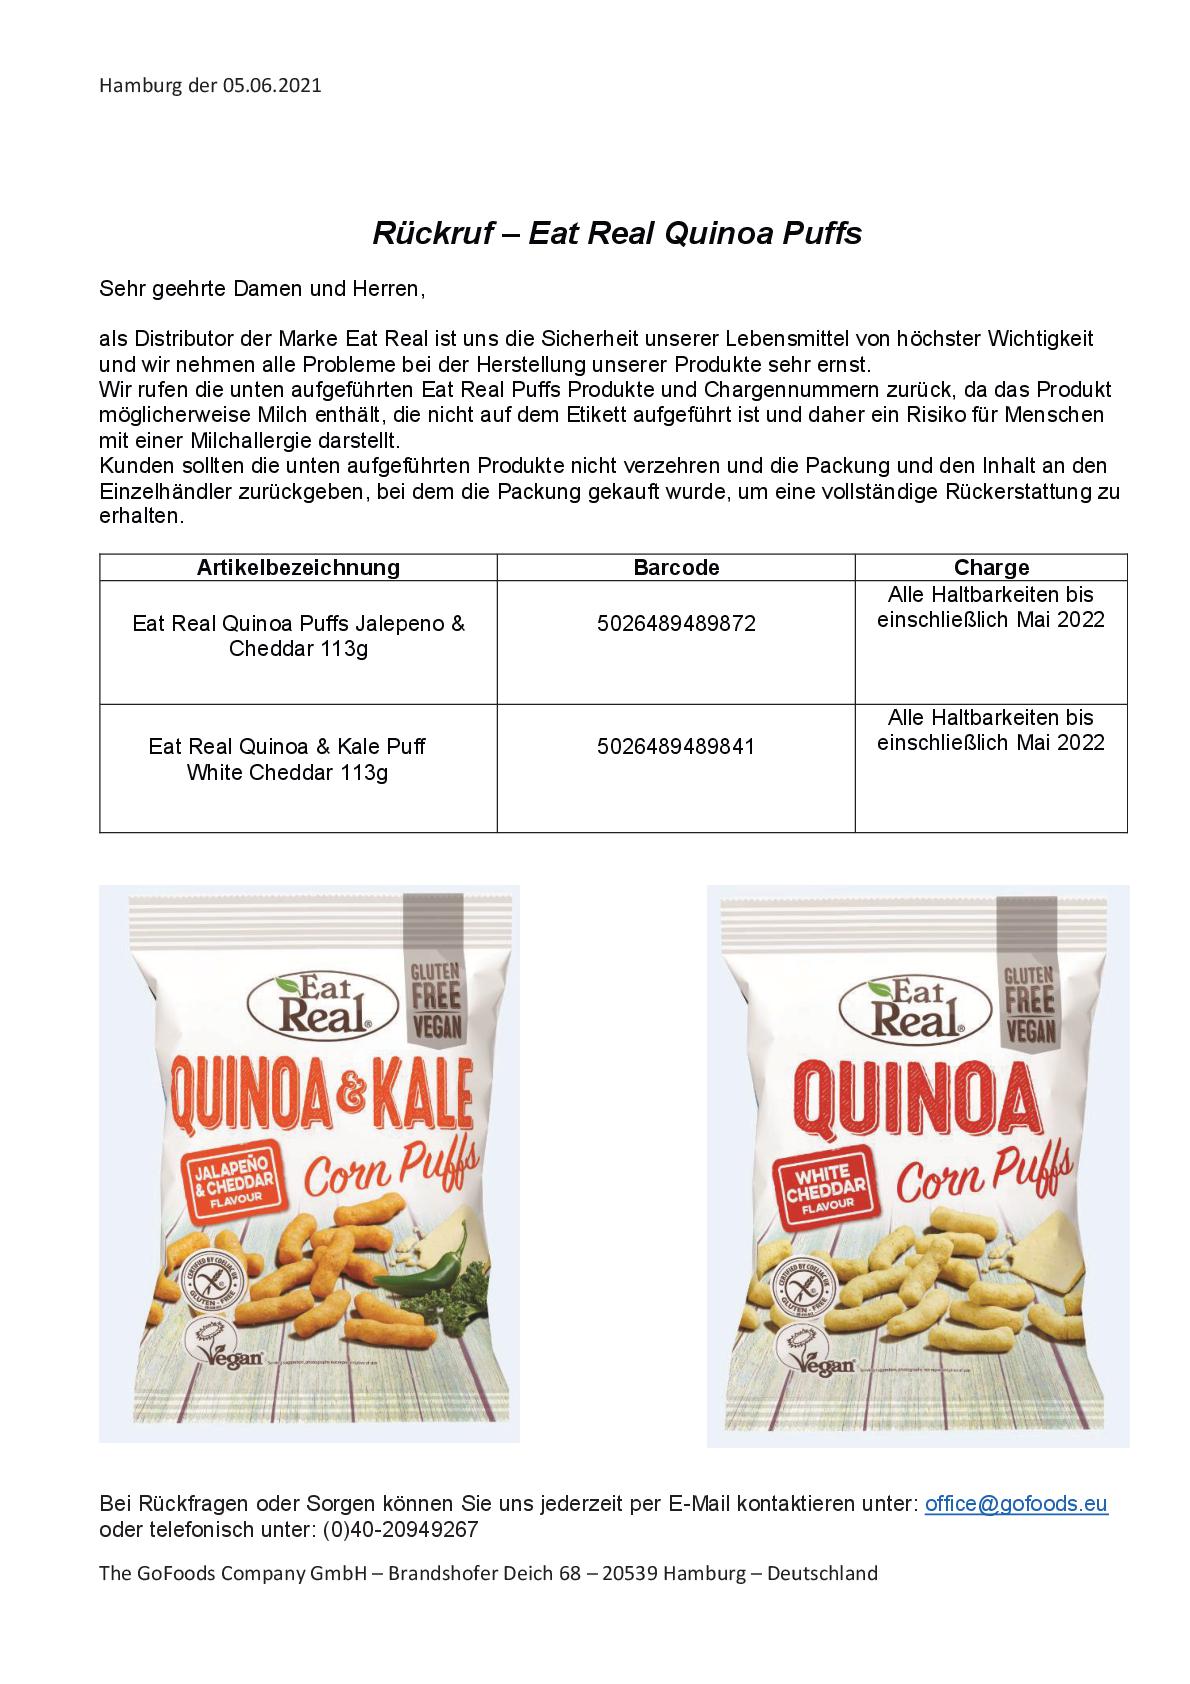 21 06 07 Rückruf Eatreal Quinoa Puffs 001